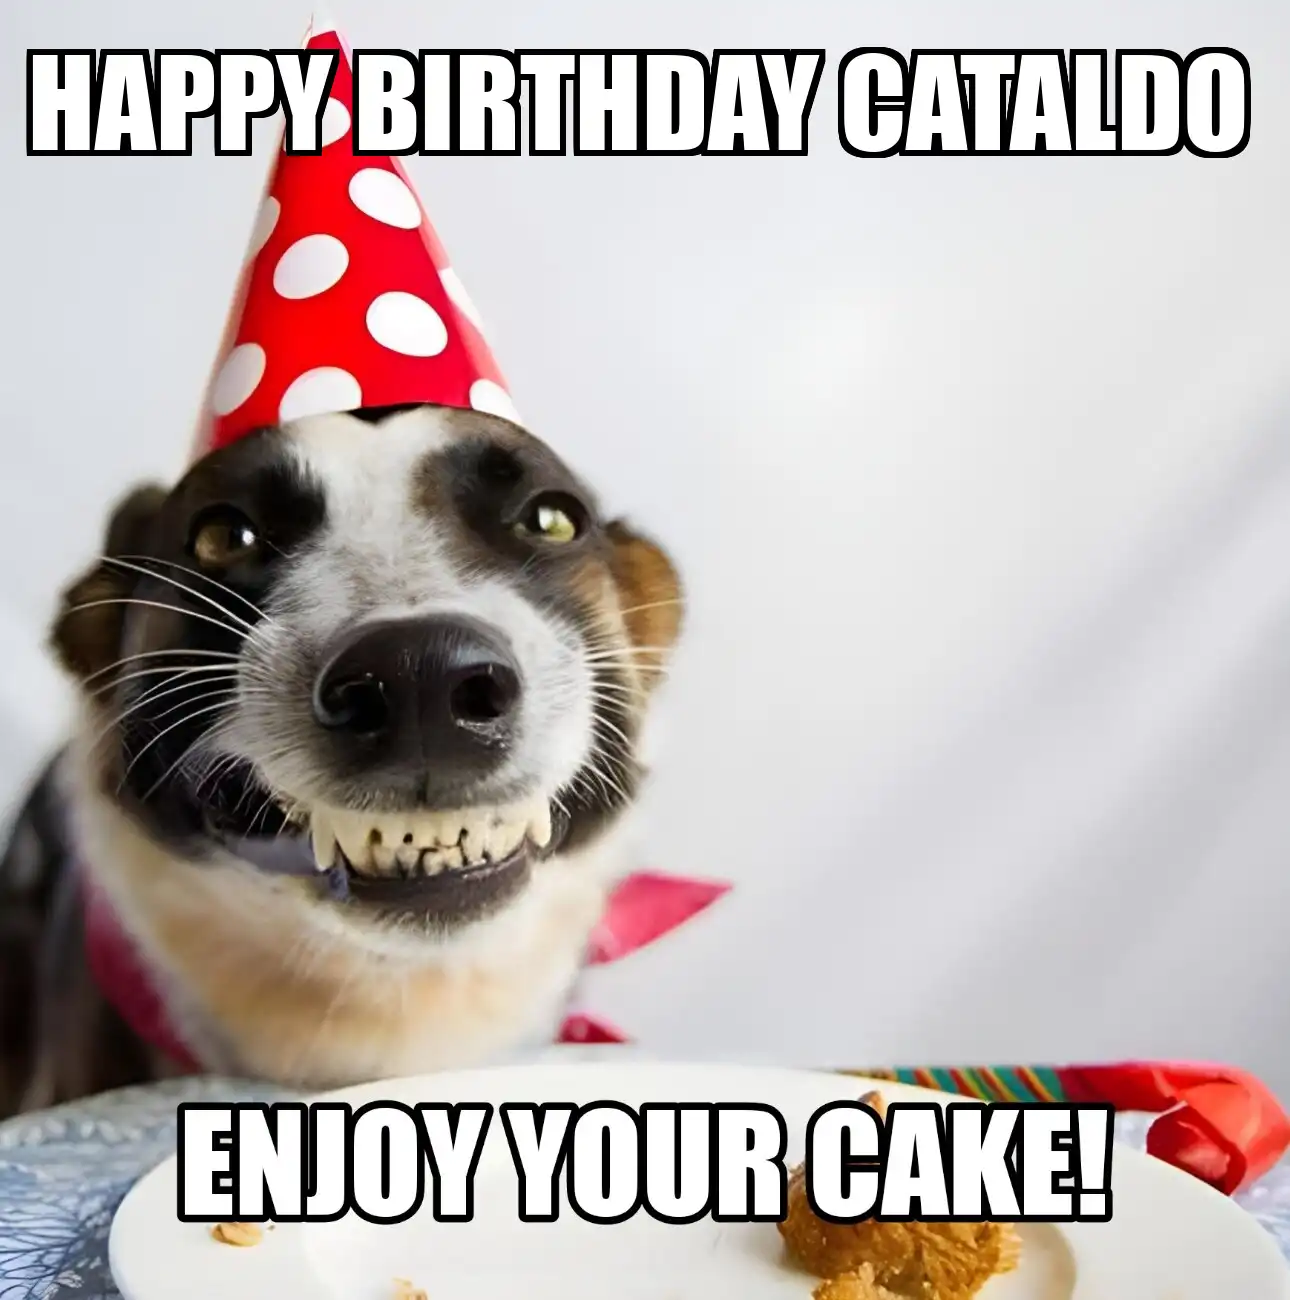 Happy Birthday Cataldo Enjoy Your Cake Dog Meme